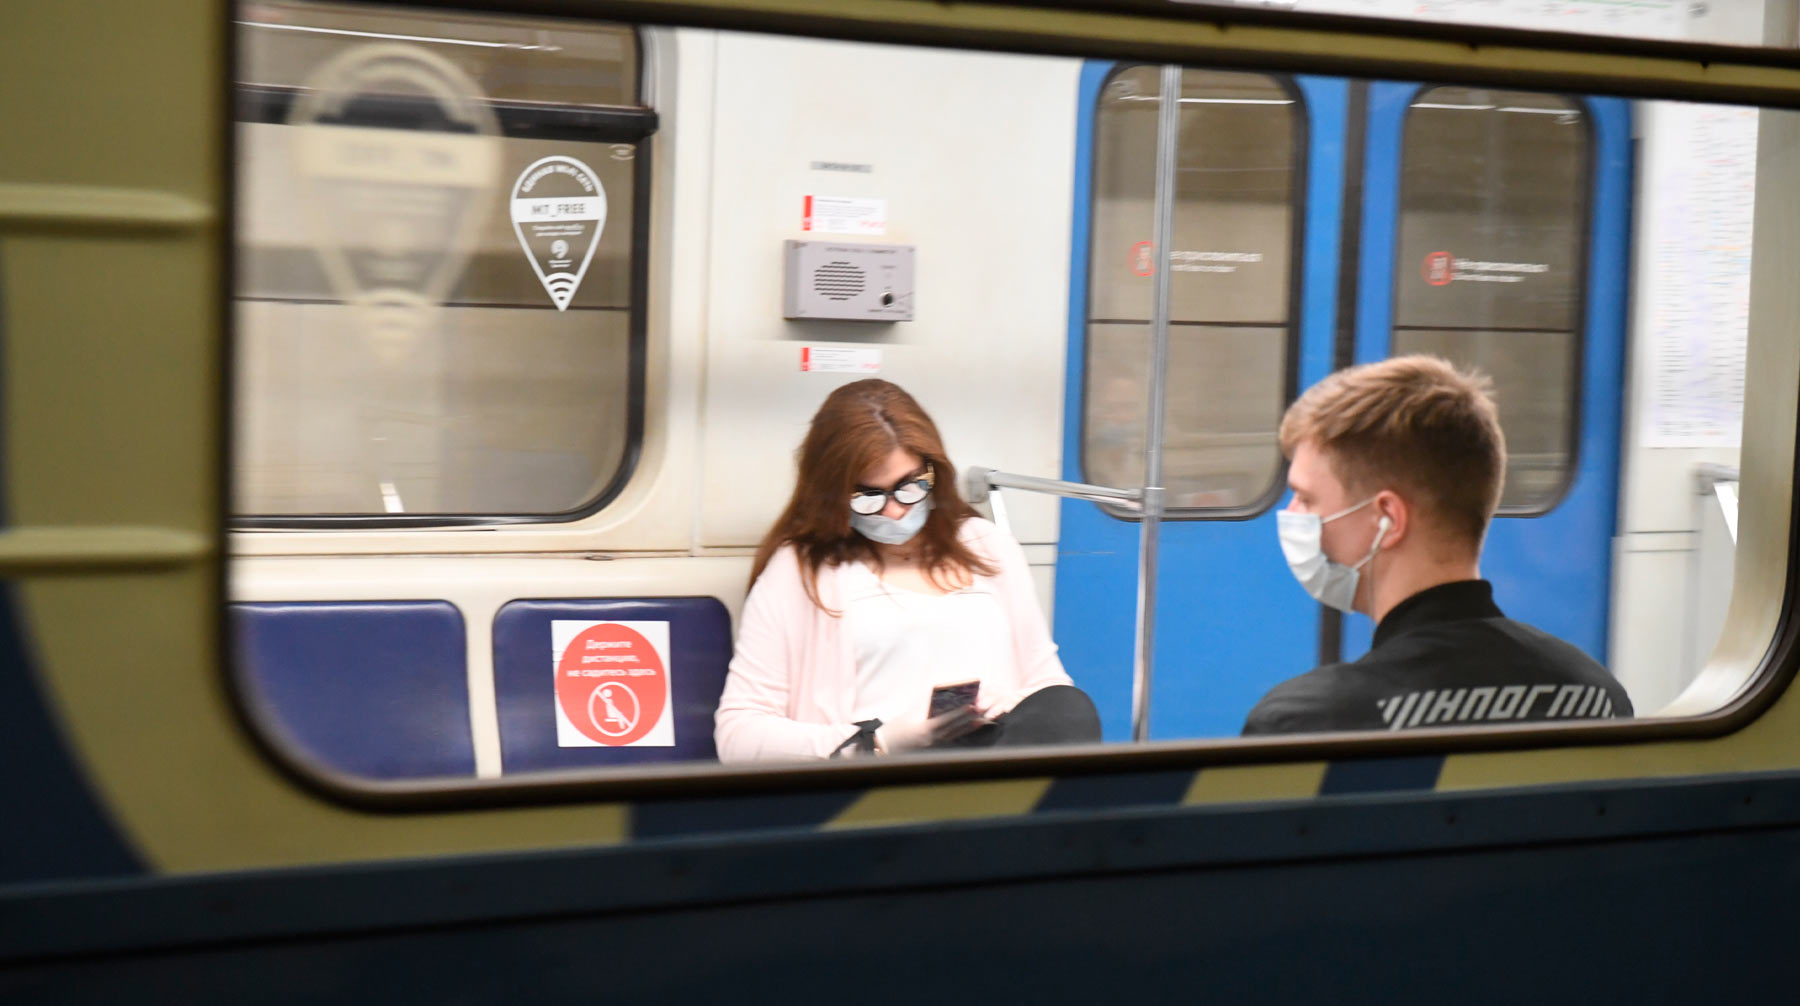 В департаменте транспорта столицы сообщили, что утром 14 мая в метрополитен зашли 94% пассажиров в масках и 68% в перчатках Фото: © Global Look Press / Komsomolskaya Pravda